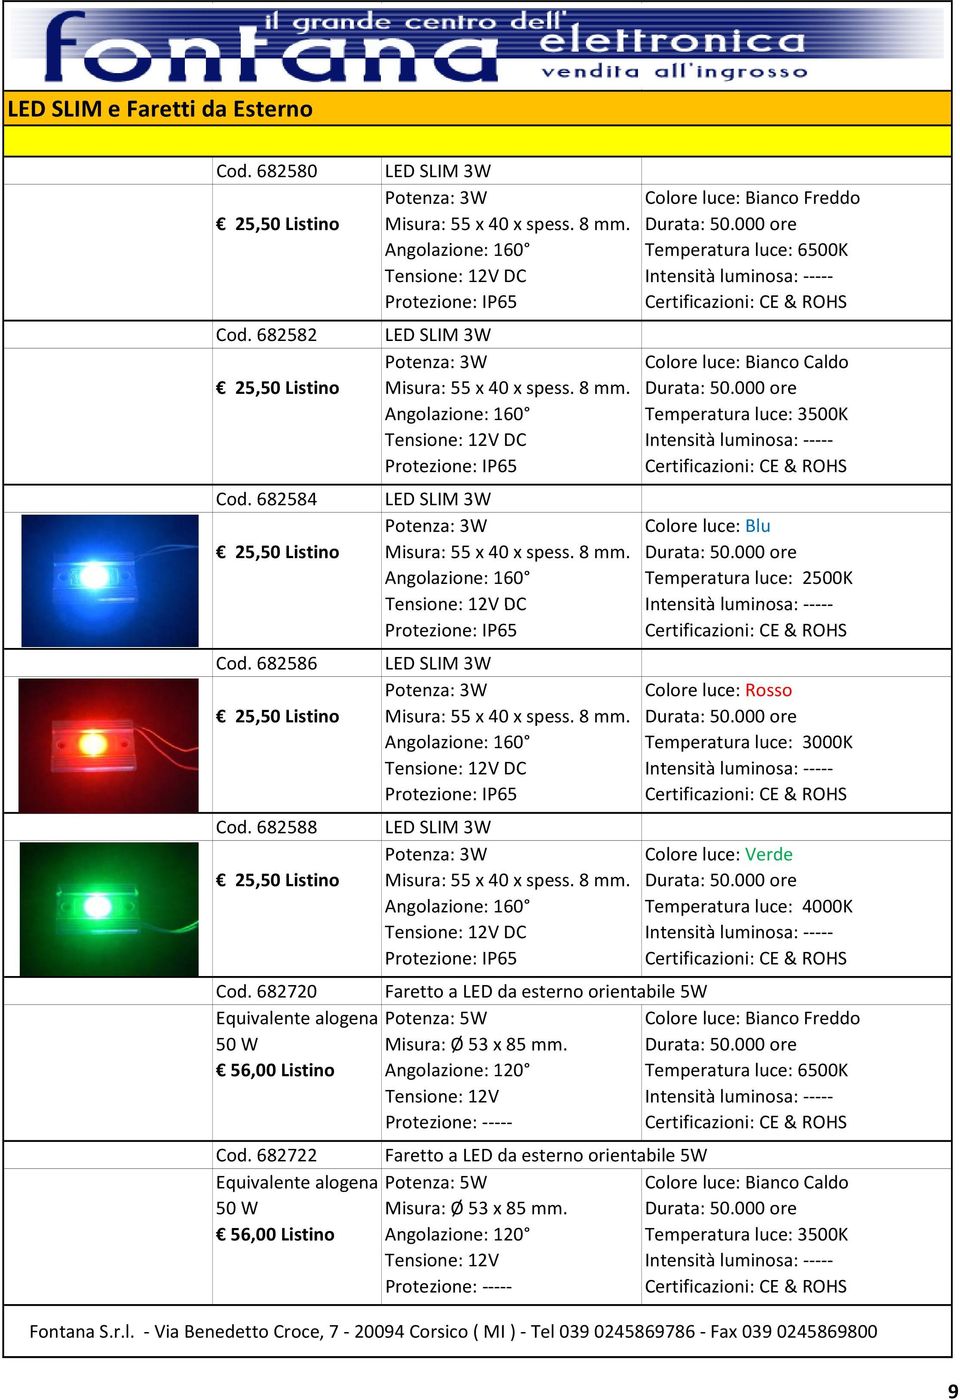 682584 LED SLIM 3W Potenza: 3W Colore luce: Blu 25,50 Listino Misura: 55 x 40 x spess. 8 mm. Angolazione: 160 Temperatura luce: 2500K Intensità luminosa: Cod.